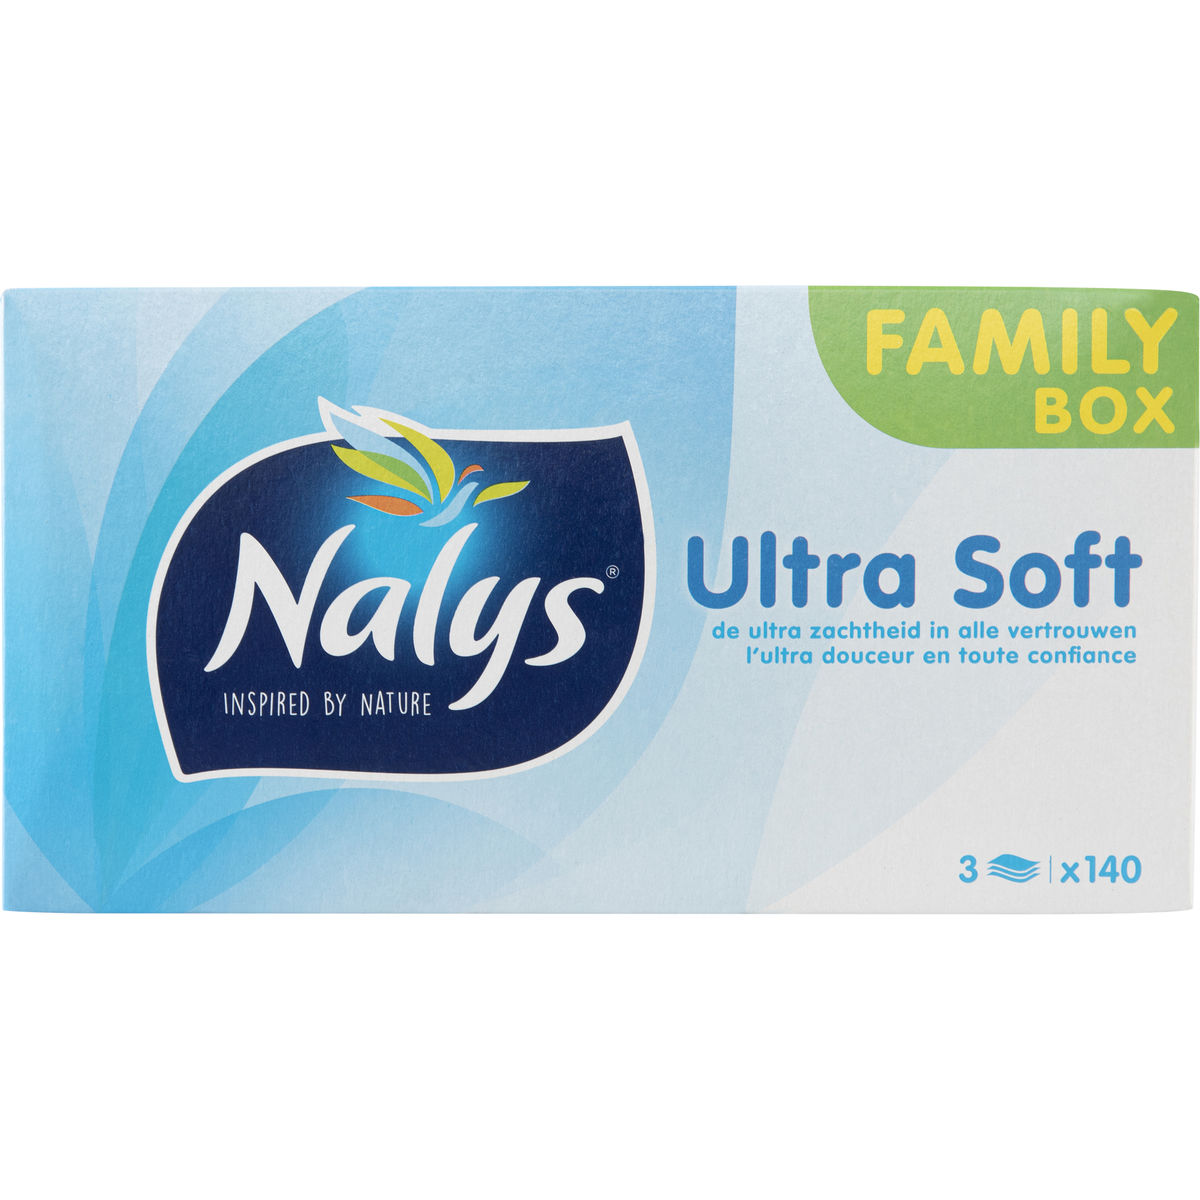 Nalys Ultra Soft Family Box 3 Lagen 140 Stuks